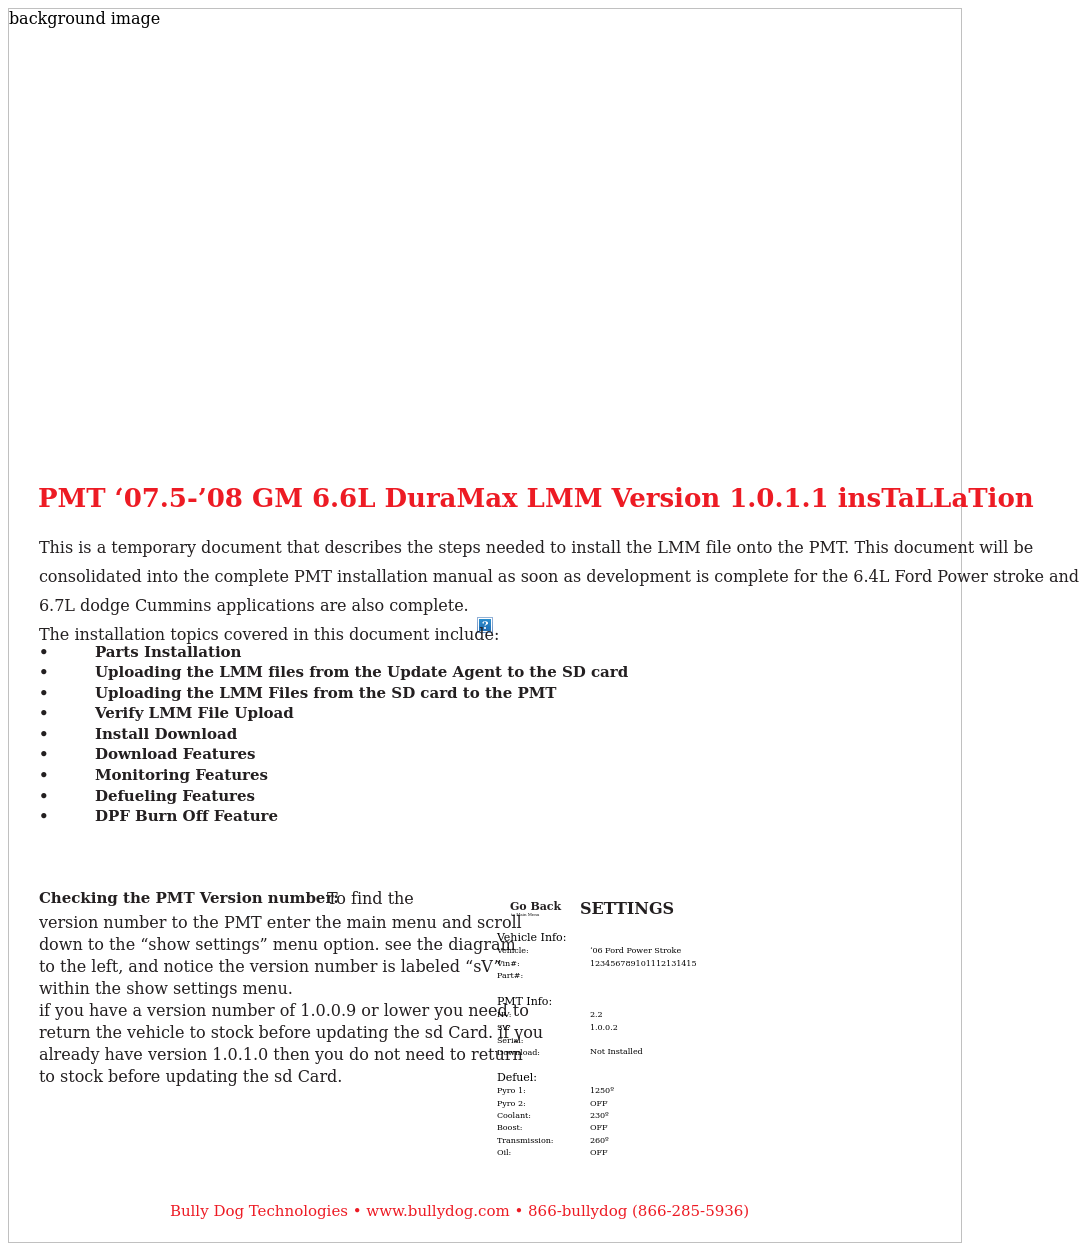 PMT 07.5-08 GM 6.6L Duramax LMM Version 1.0.1.1